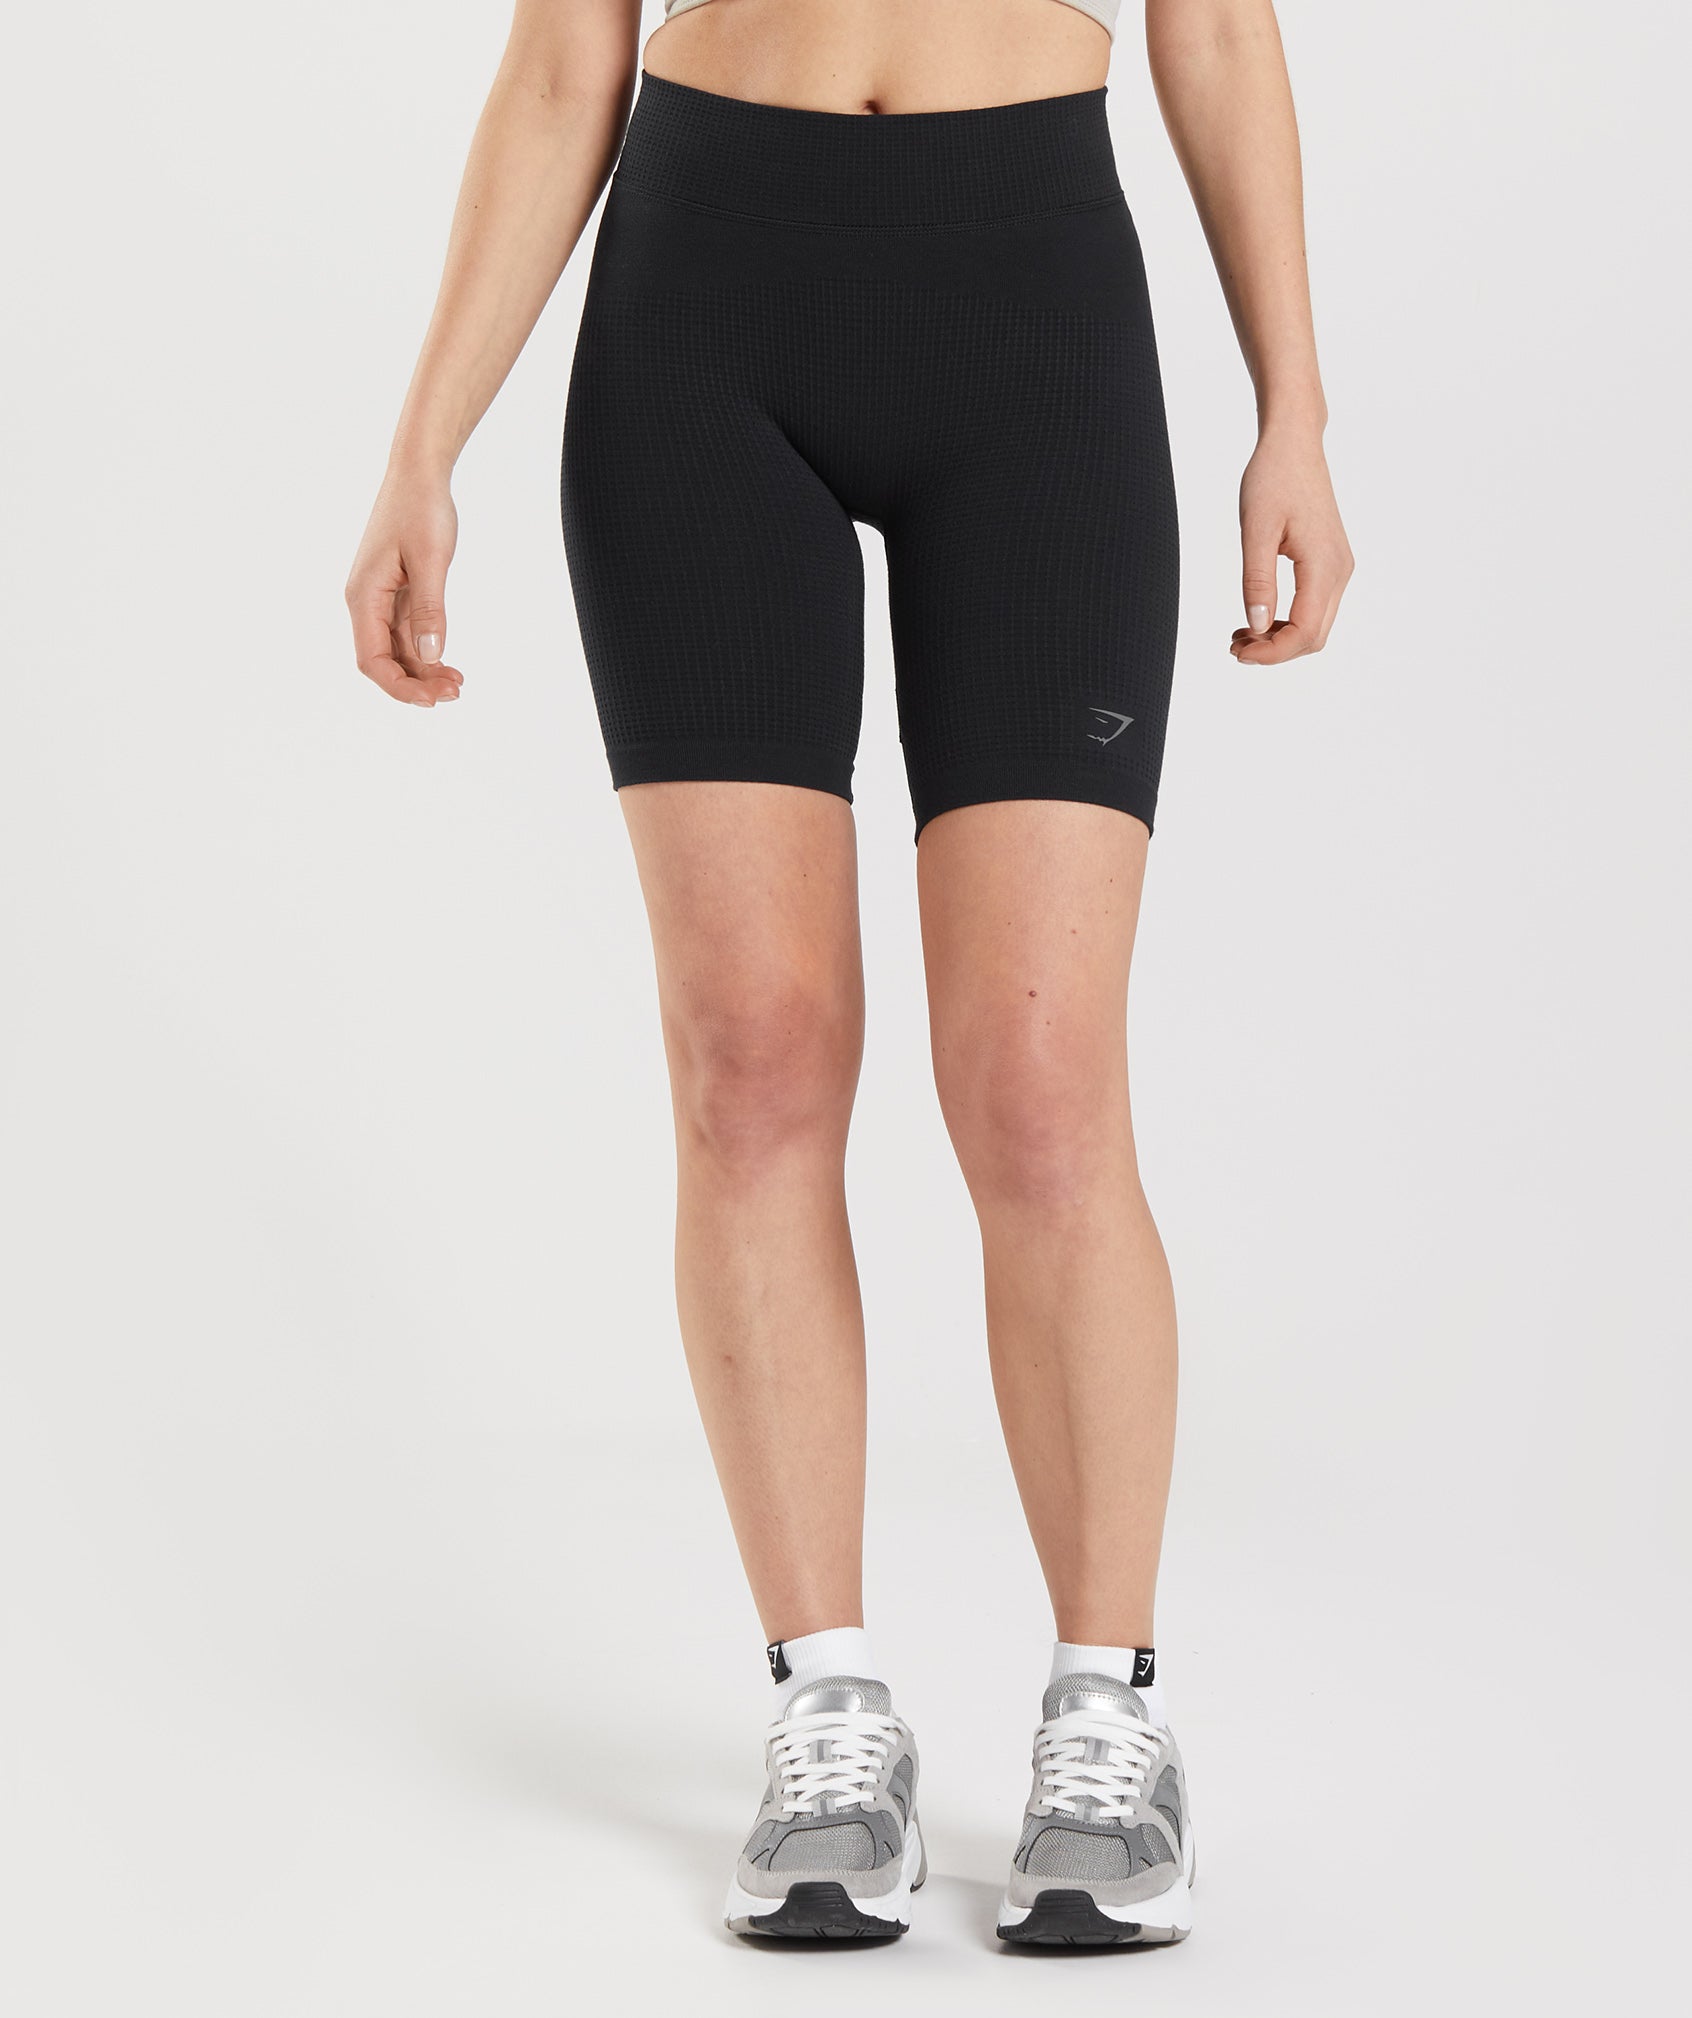 Gymshark Biker Bike Shorts for Women